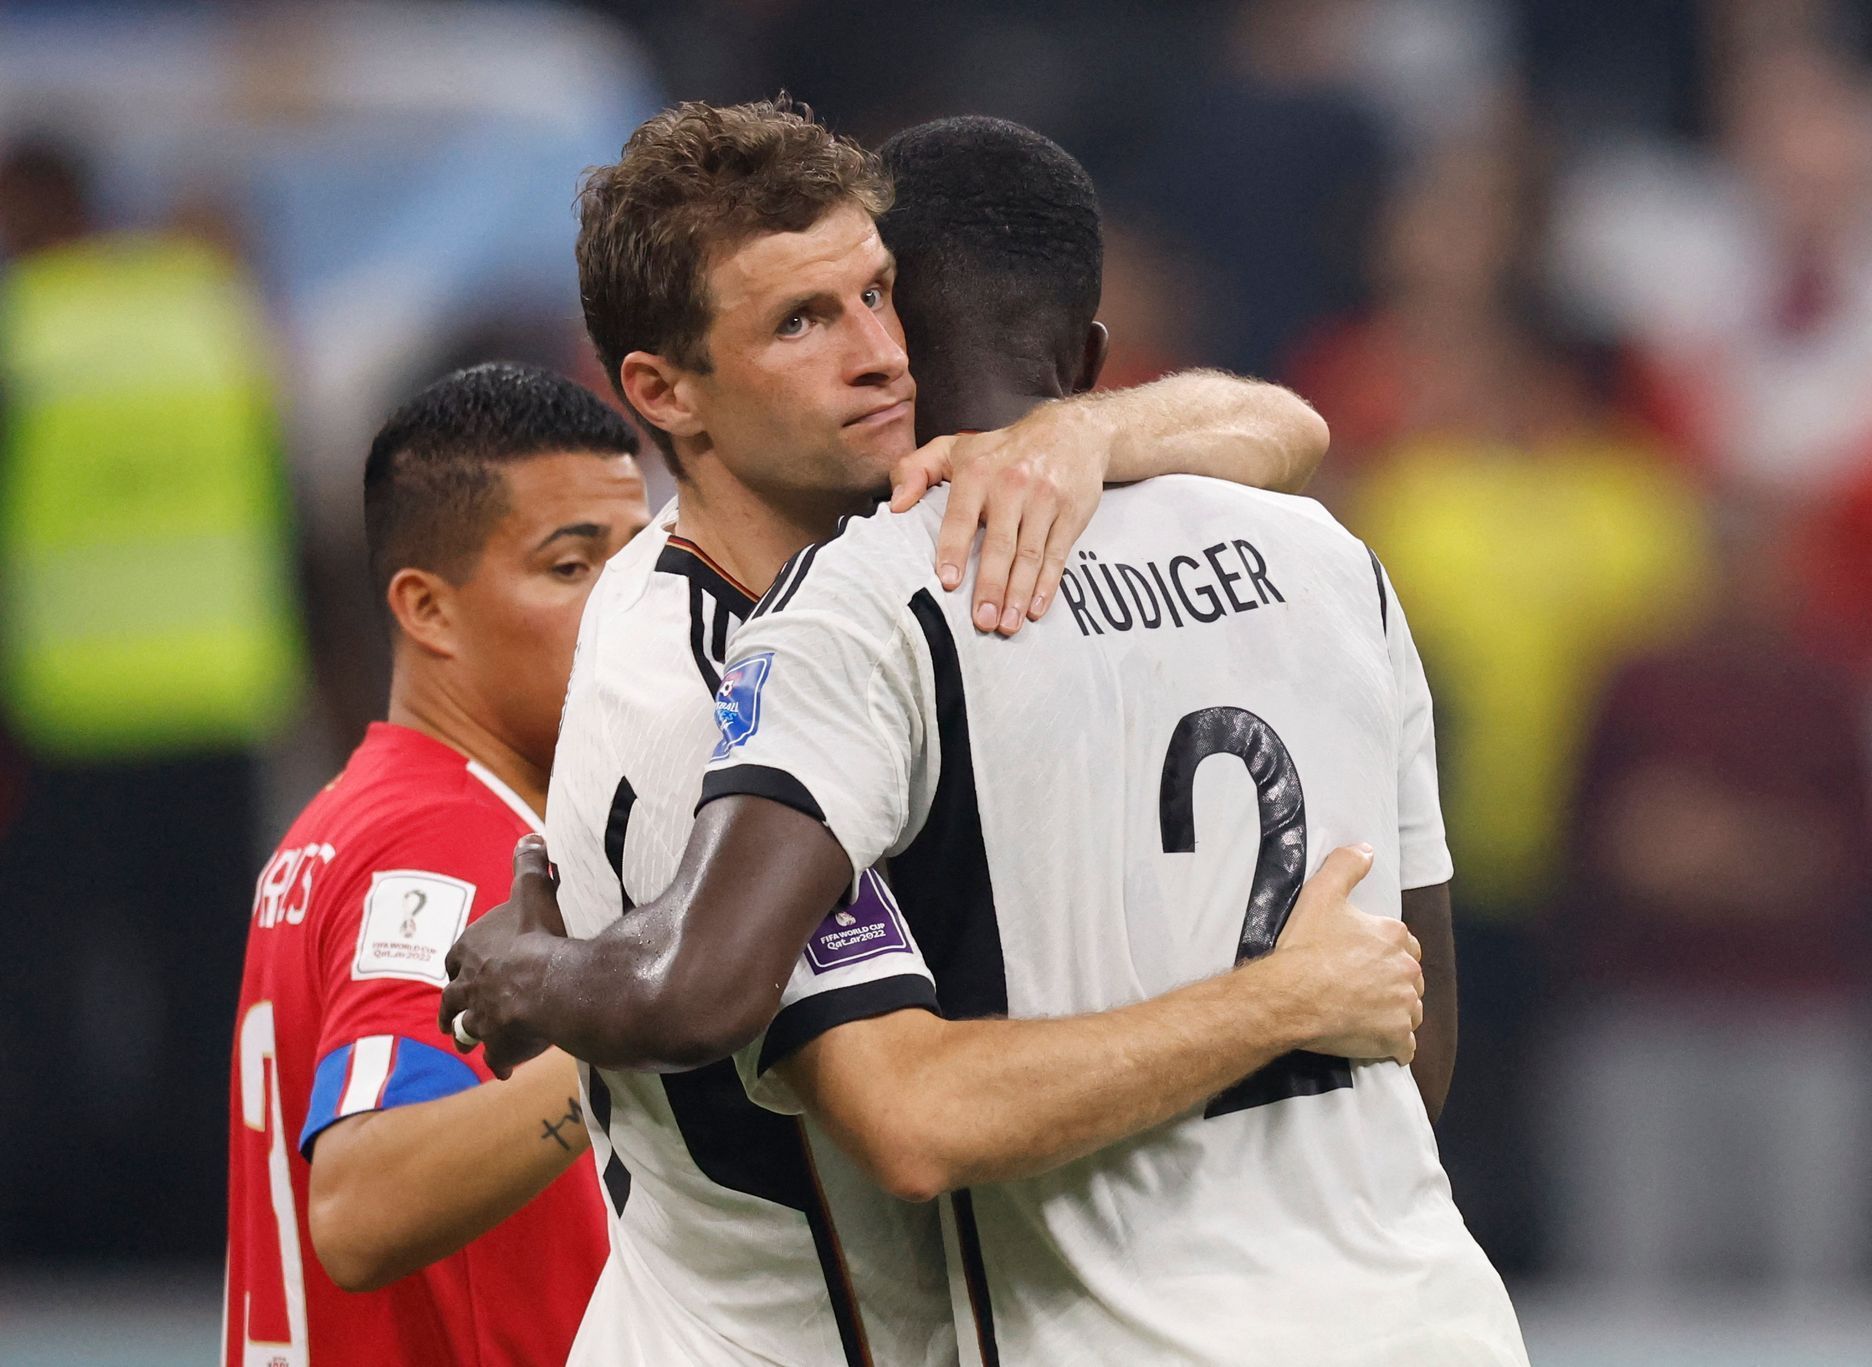 Zklamaní Thomas Müller a Antonio Rüdiger po zápase MS 2022 Kostarika - Německo